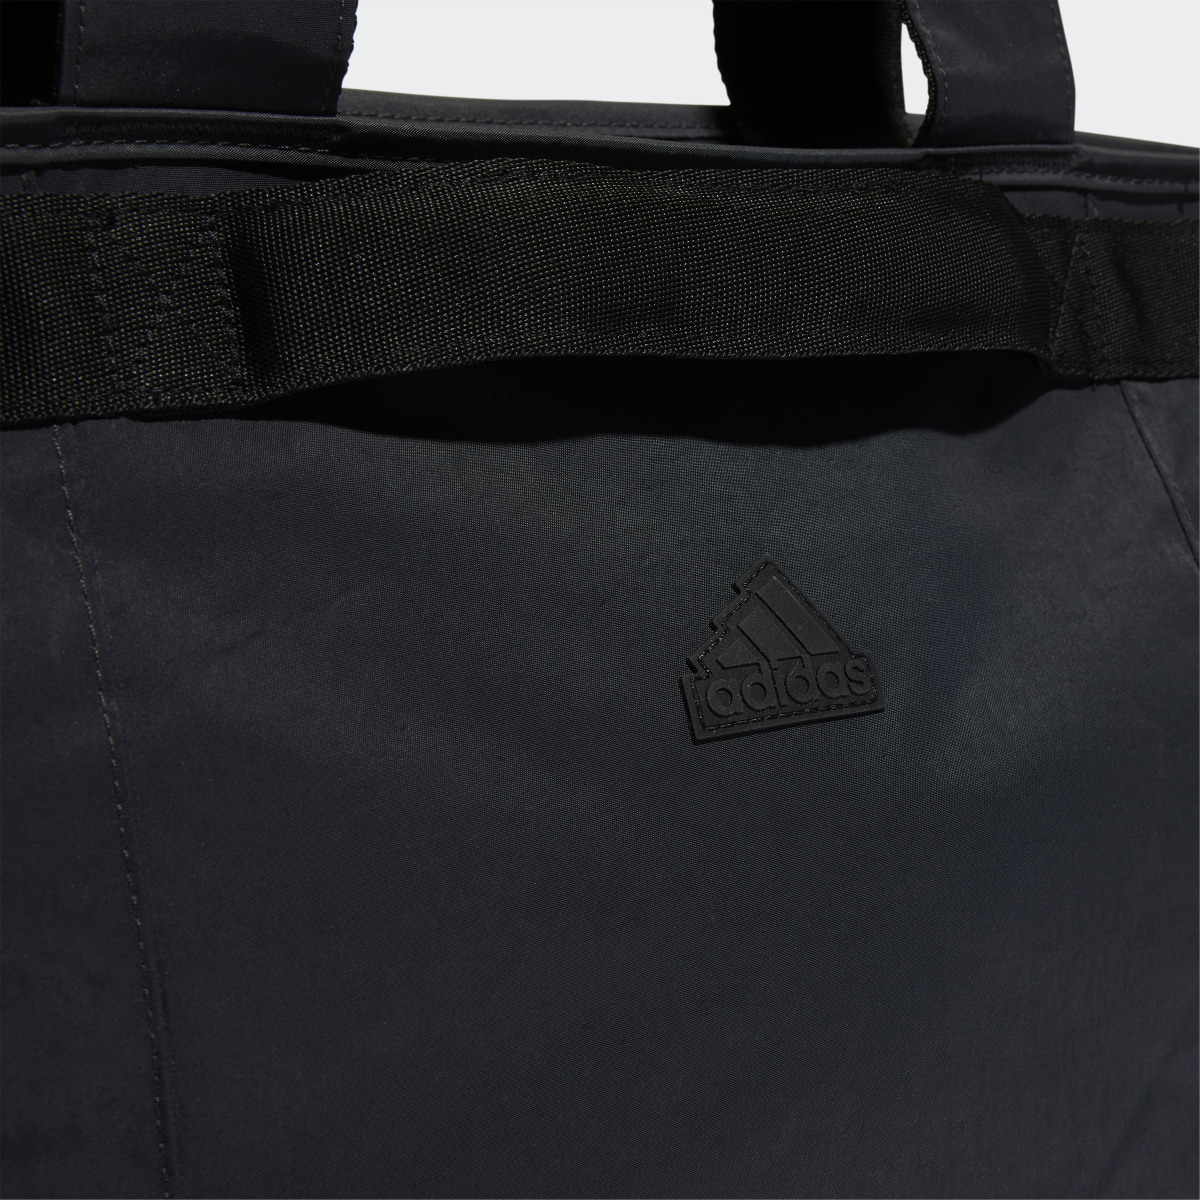 Adidas Shopper Bag. 6